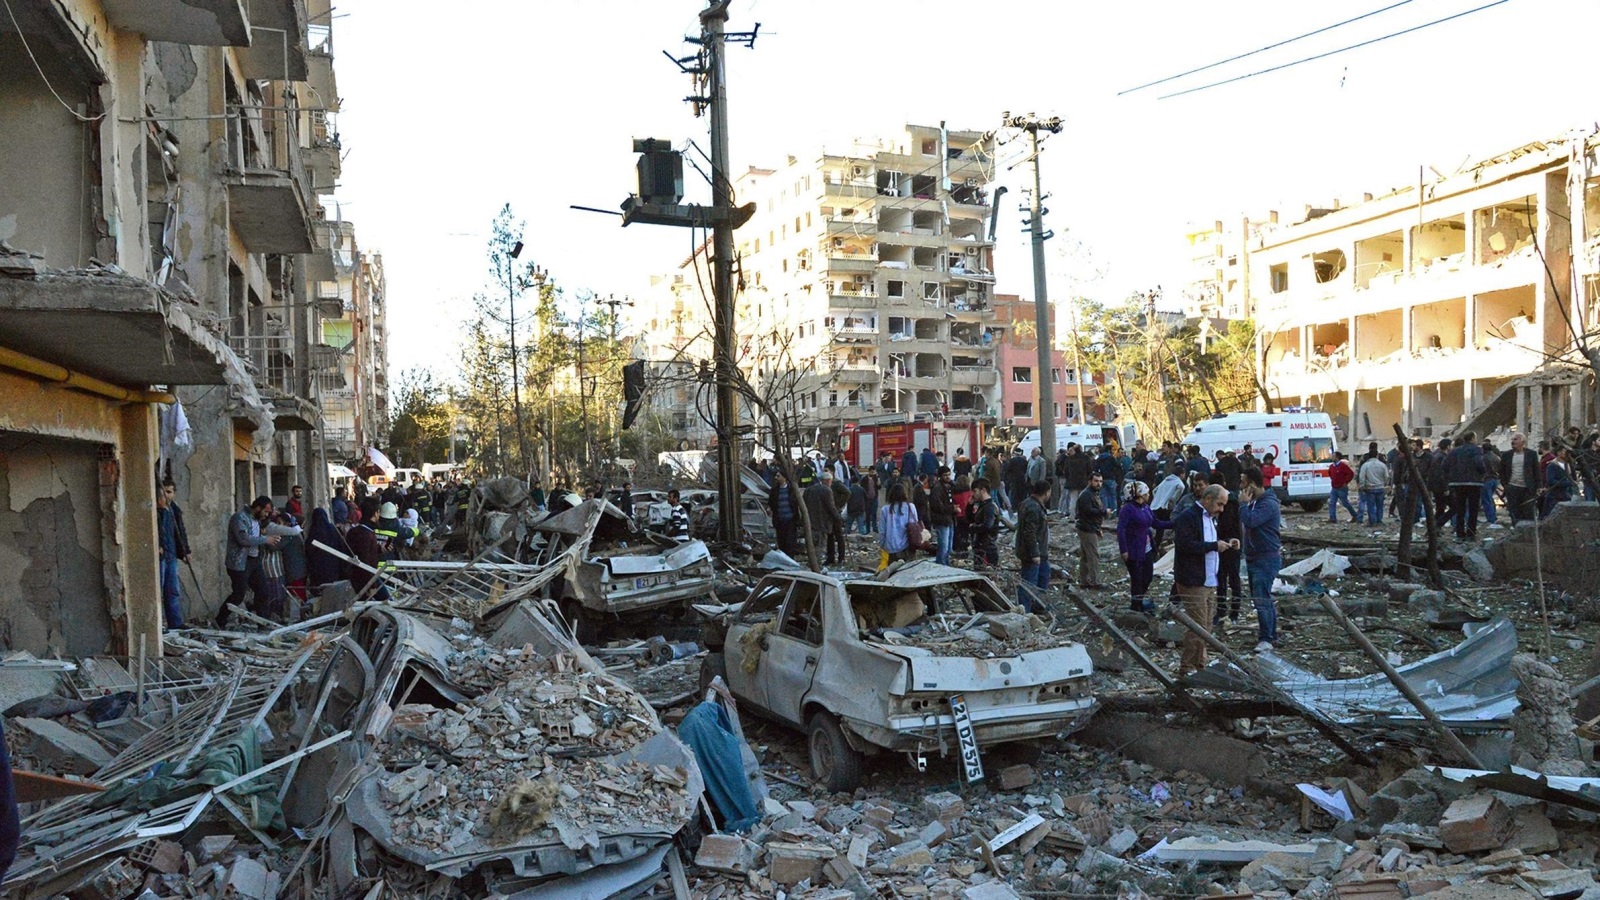 ‪ديار بكر شهدت اليوم انفجارا عنيفا أدى لمقتل تسعة أشخاص وجرح 100 آخرين‬ (الأوروبية)